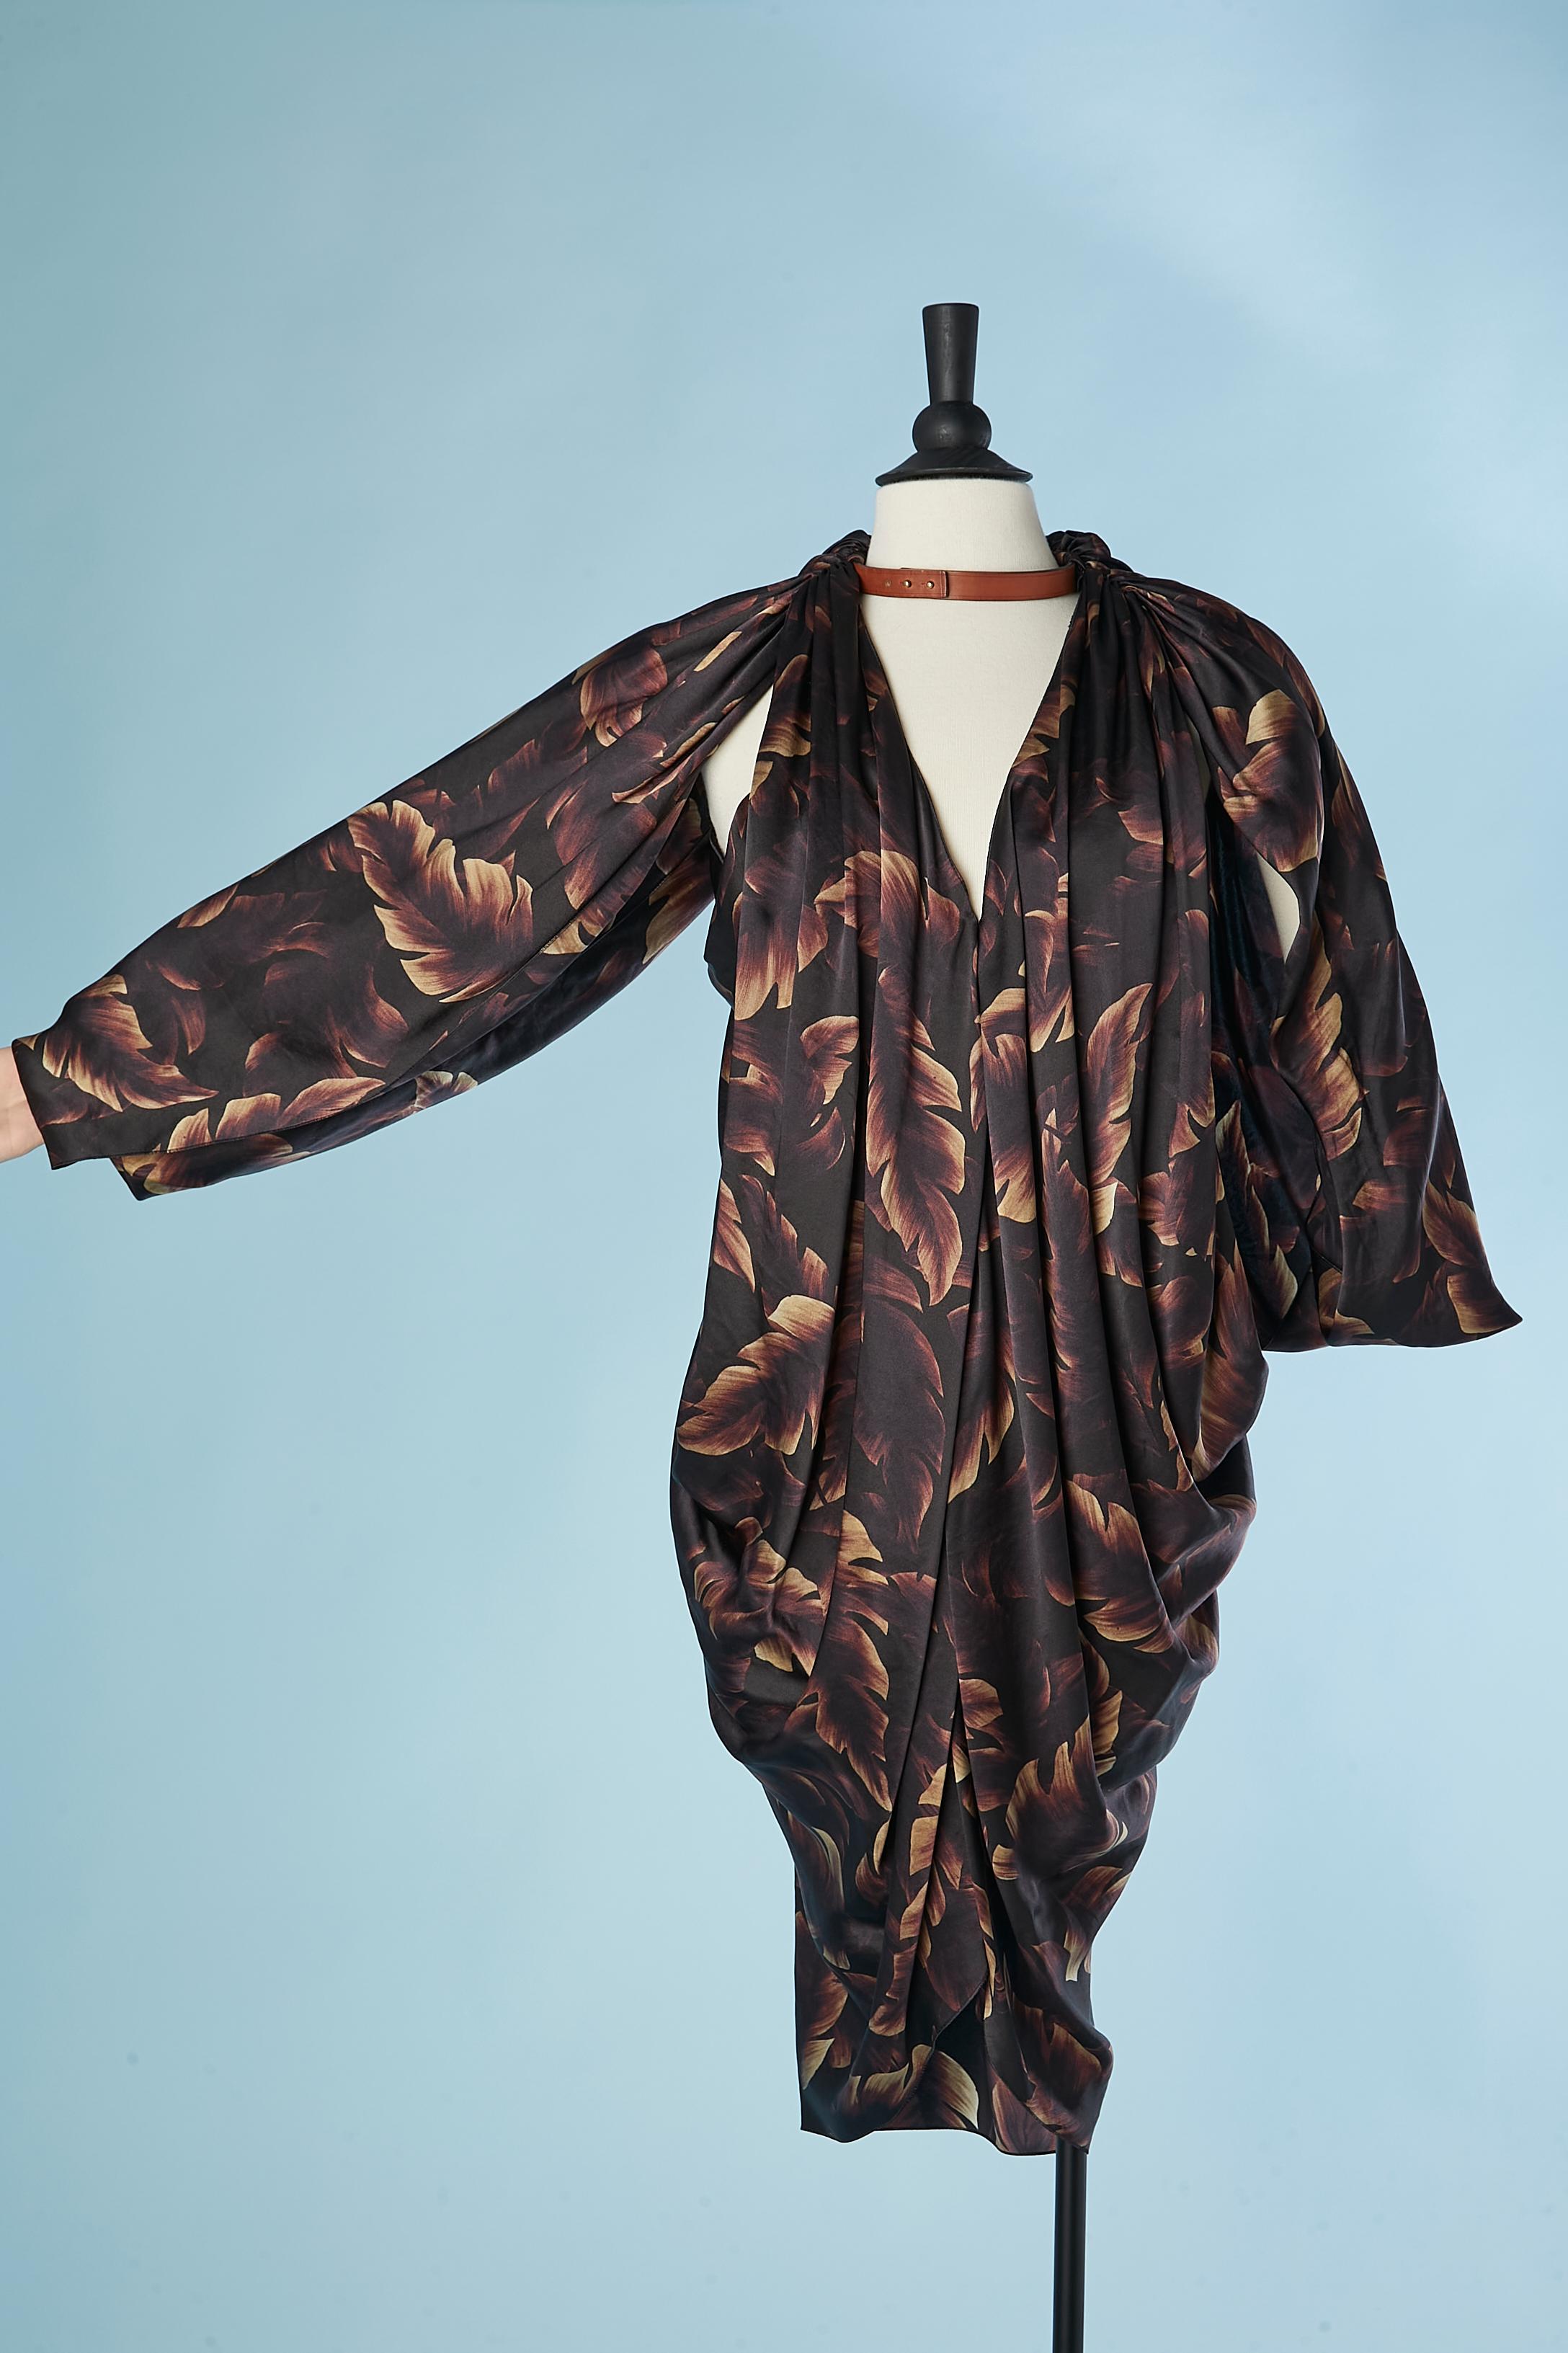 Robe de cocktail drapée en soie imprimée de feuilles avec collier en cuir naturel attaché. Ouvert sous les bras. SS 2011
TAILLE 38 